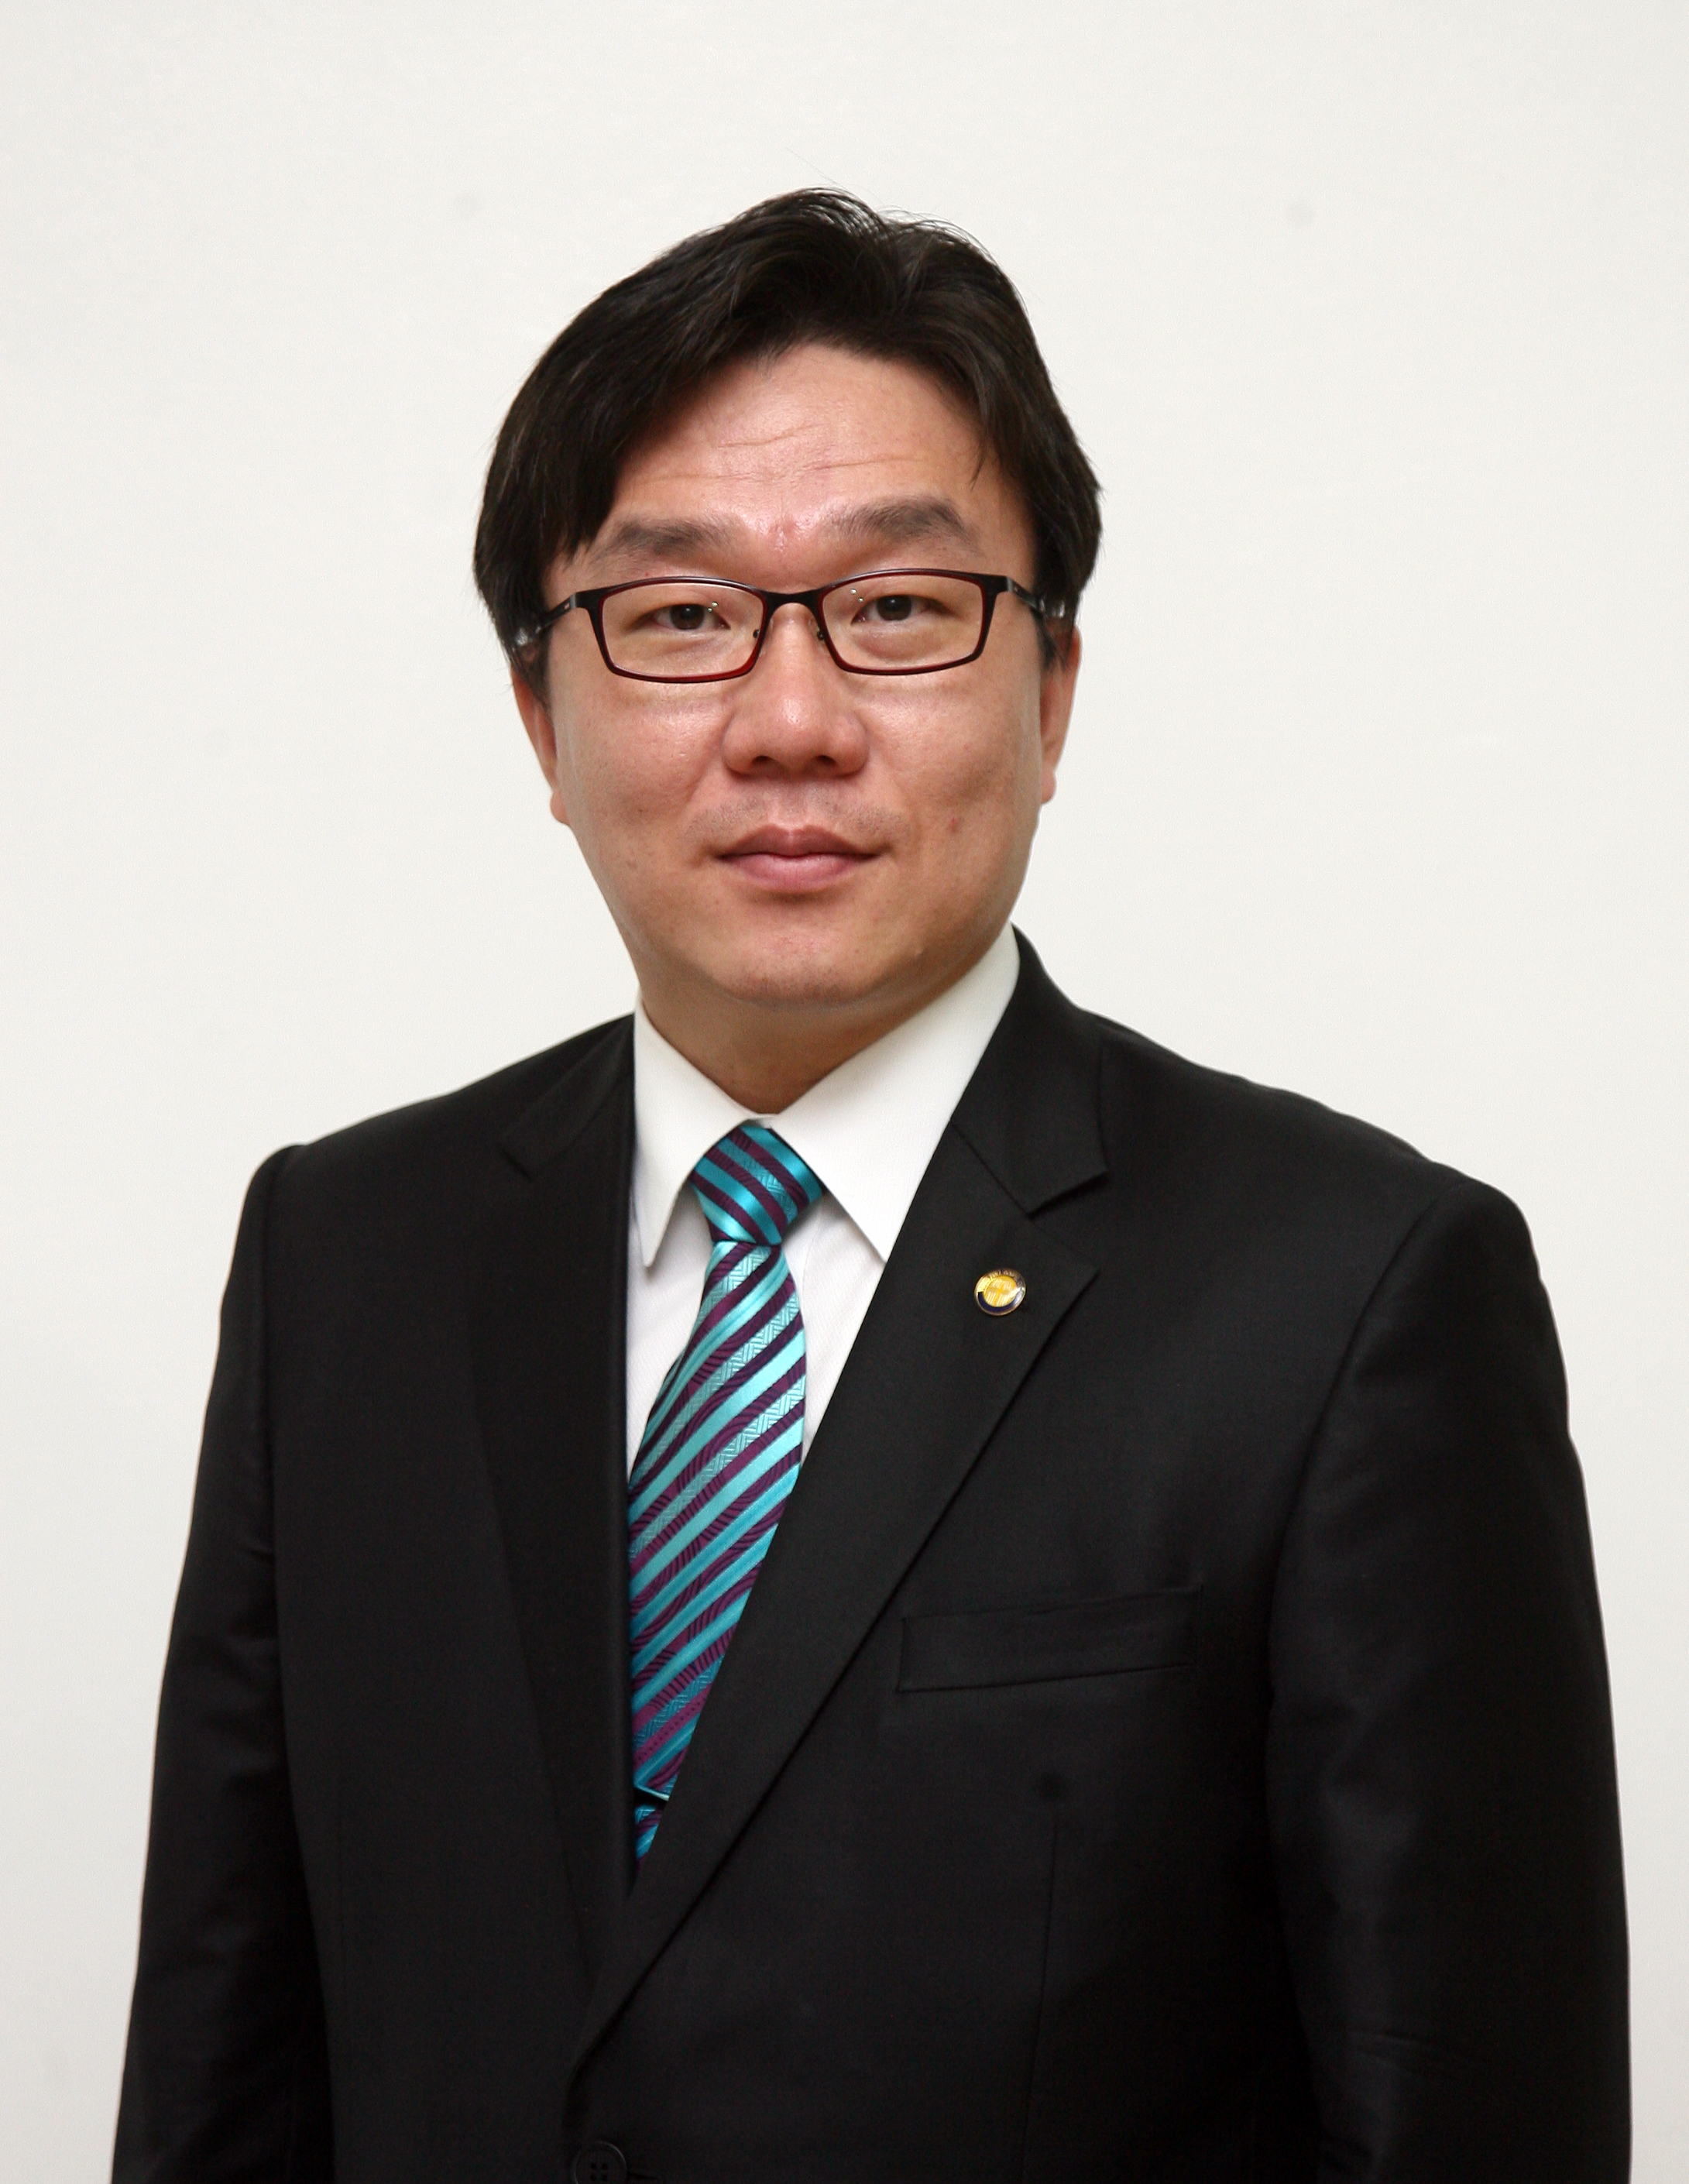 김민철 교수